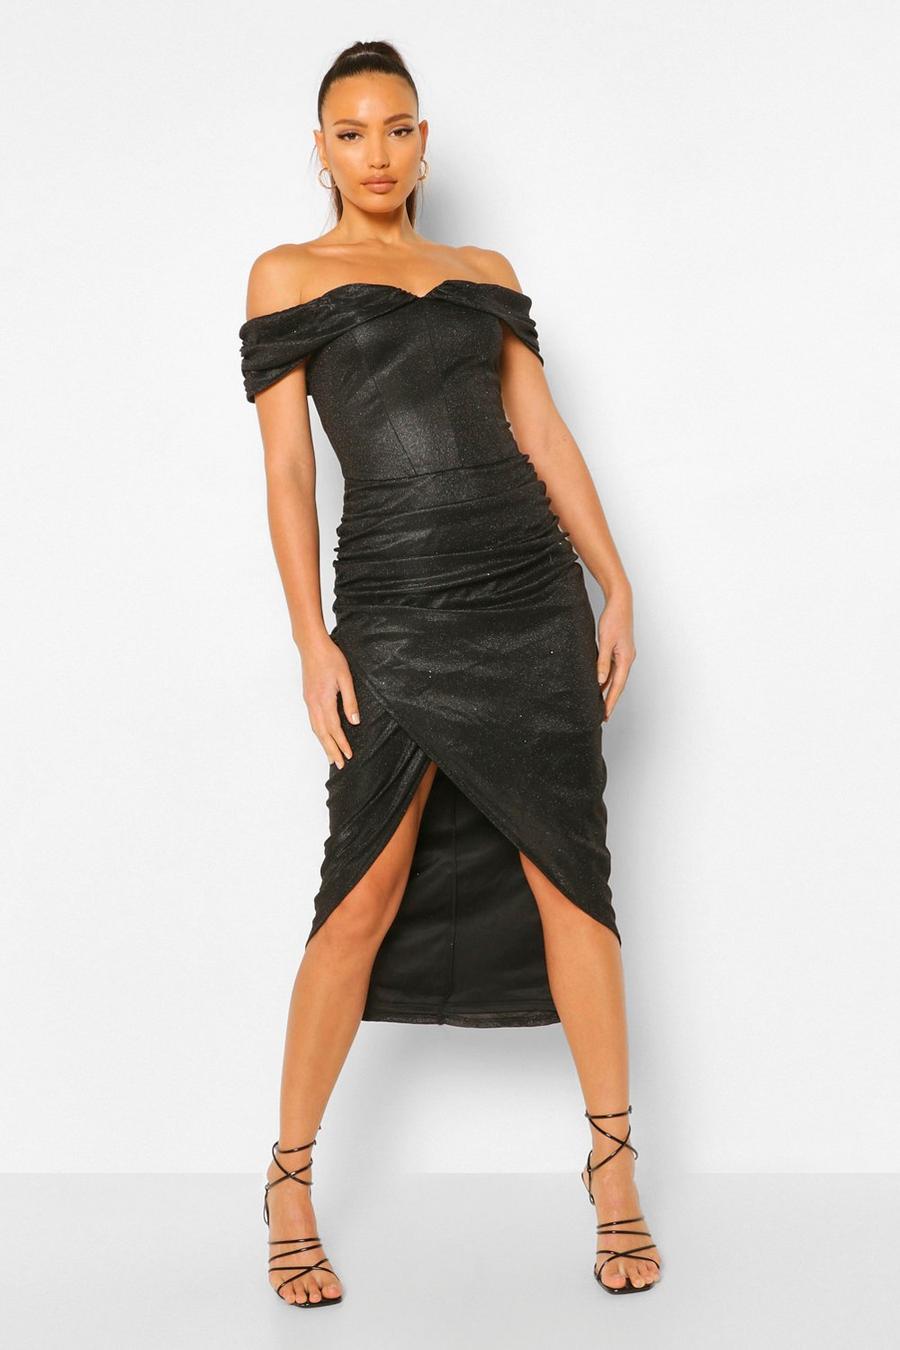 שחור שמלת מידקסי מבריקה עם מעטפת קדמית וכתפיים חשופות לנשים גבוהות image number 1